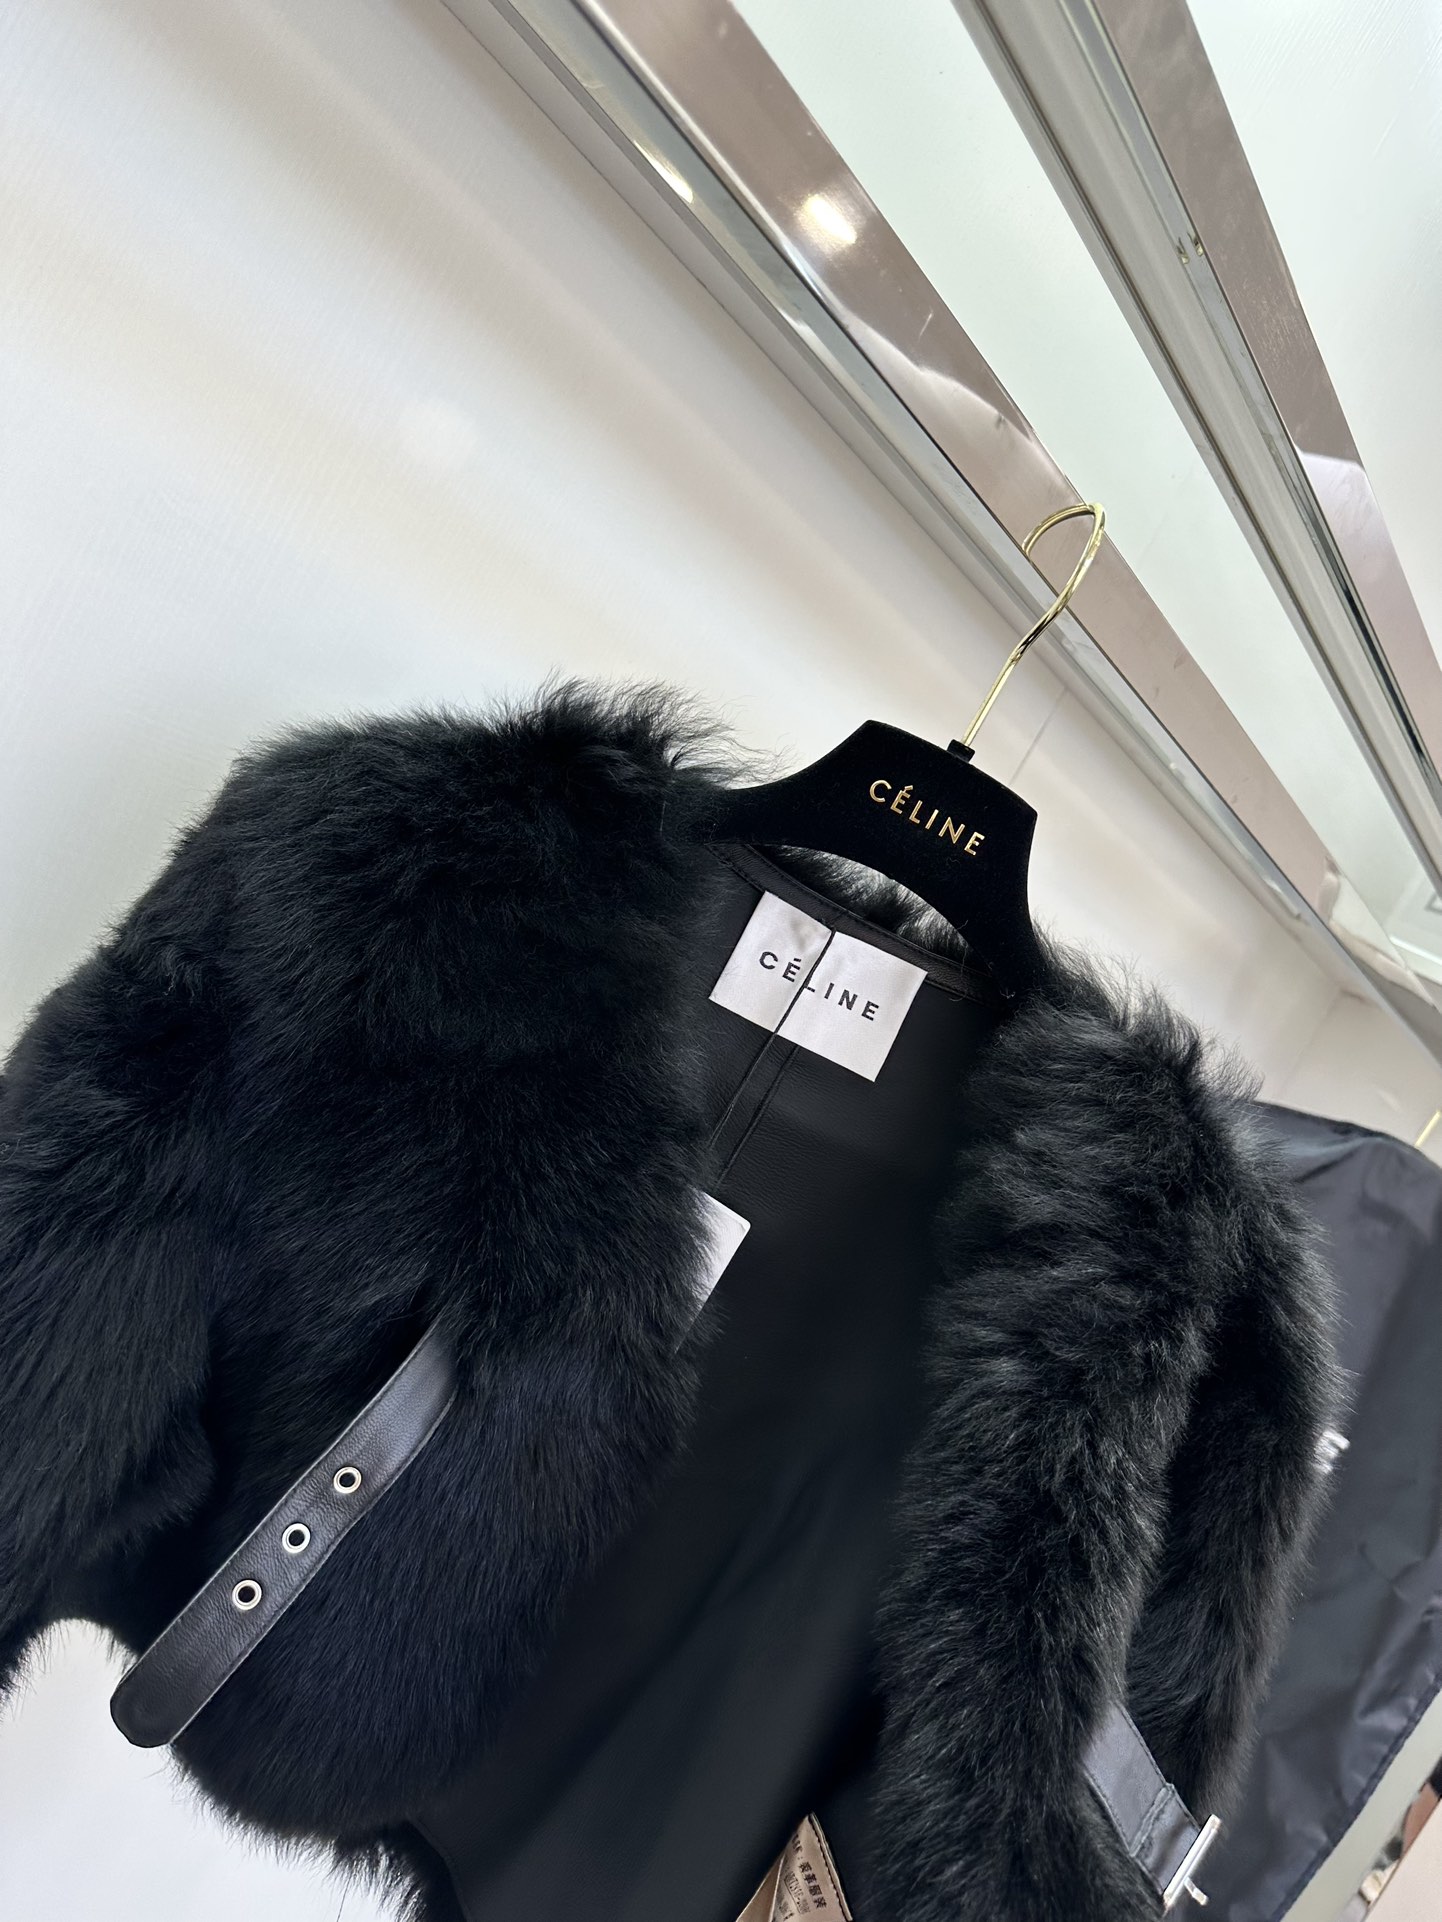 セリーヌ 上 着激安通販 鮮やかな色 イタリア製 高級品 もこもこ 暖かい ファッション レディース 3色可選 ブラック_5